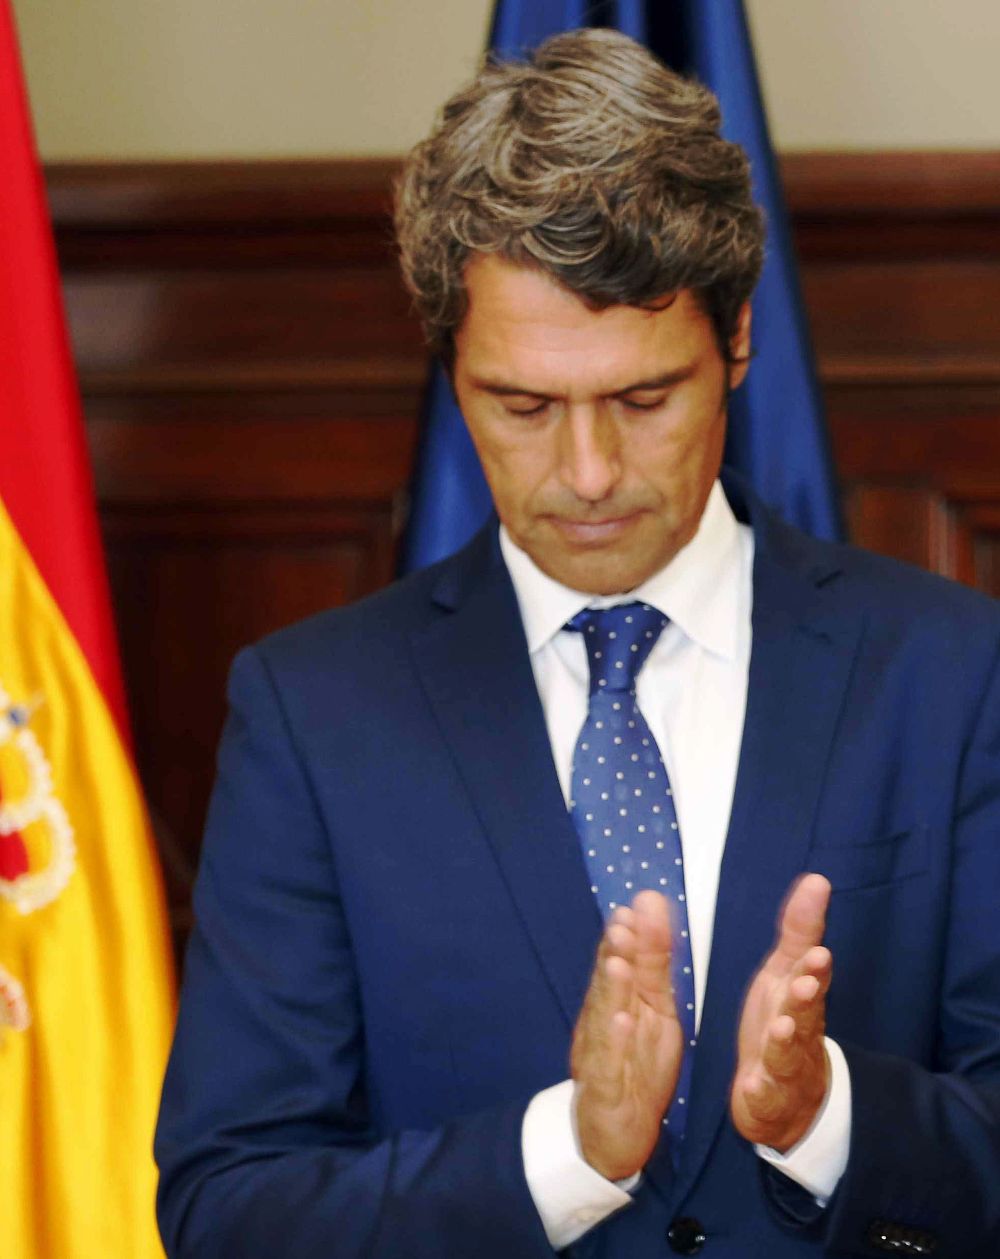 El delegado del Gobierno en Canarias, Enrique Hernández Bento.